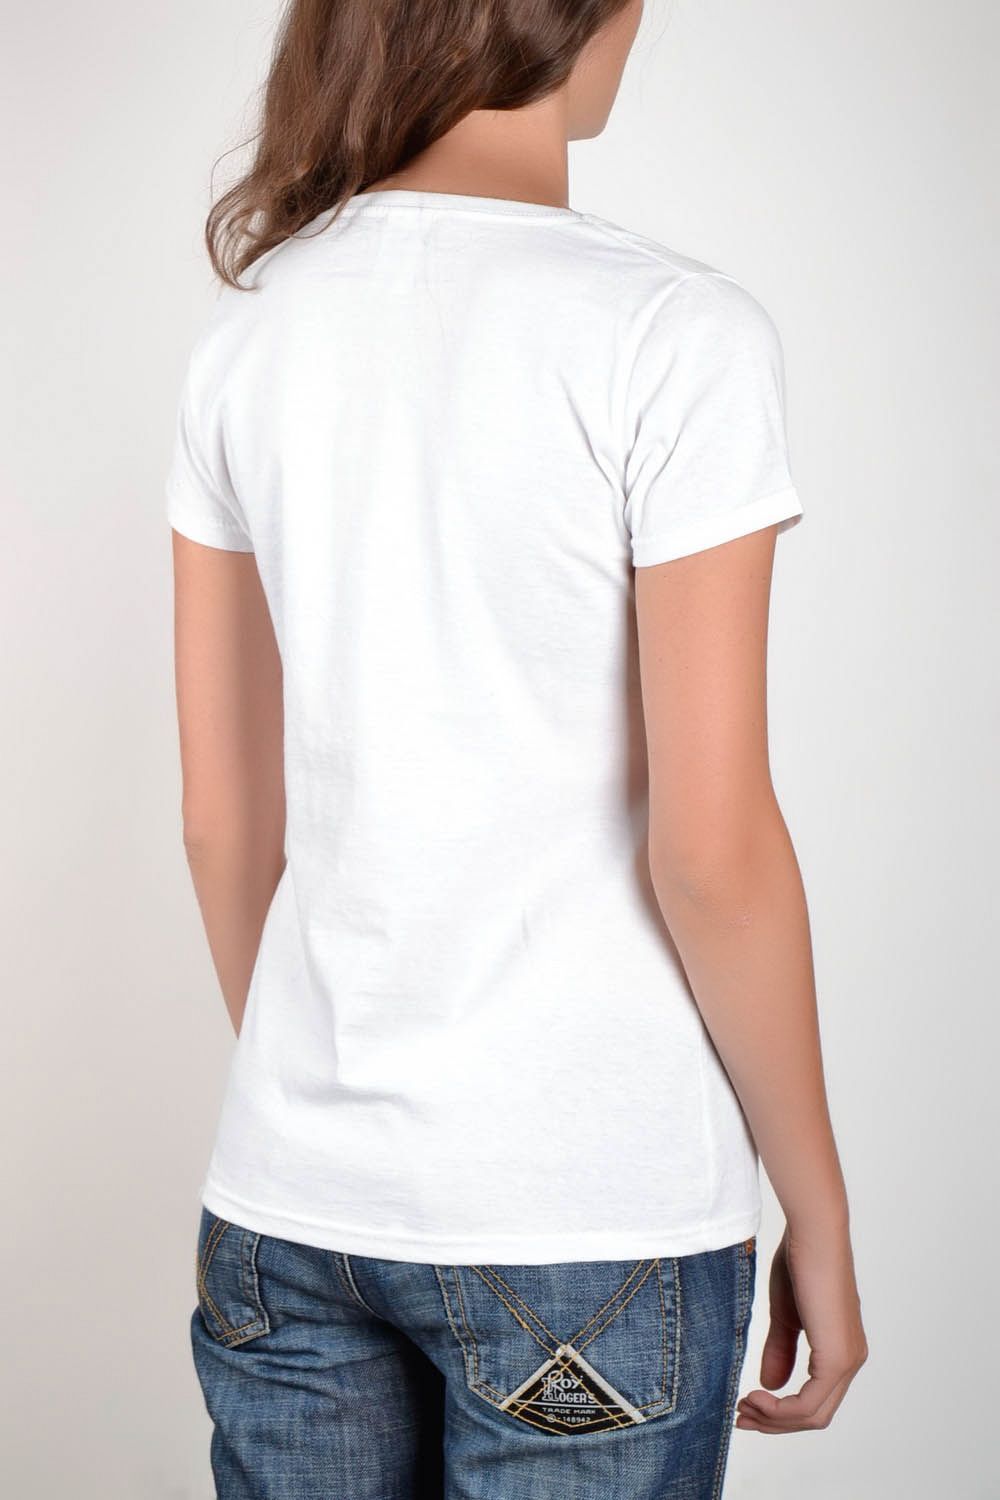 T-shirt blanc fait main Lièvres photo 4